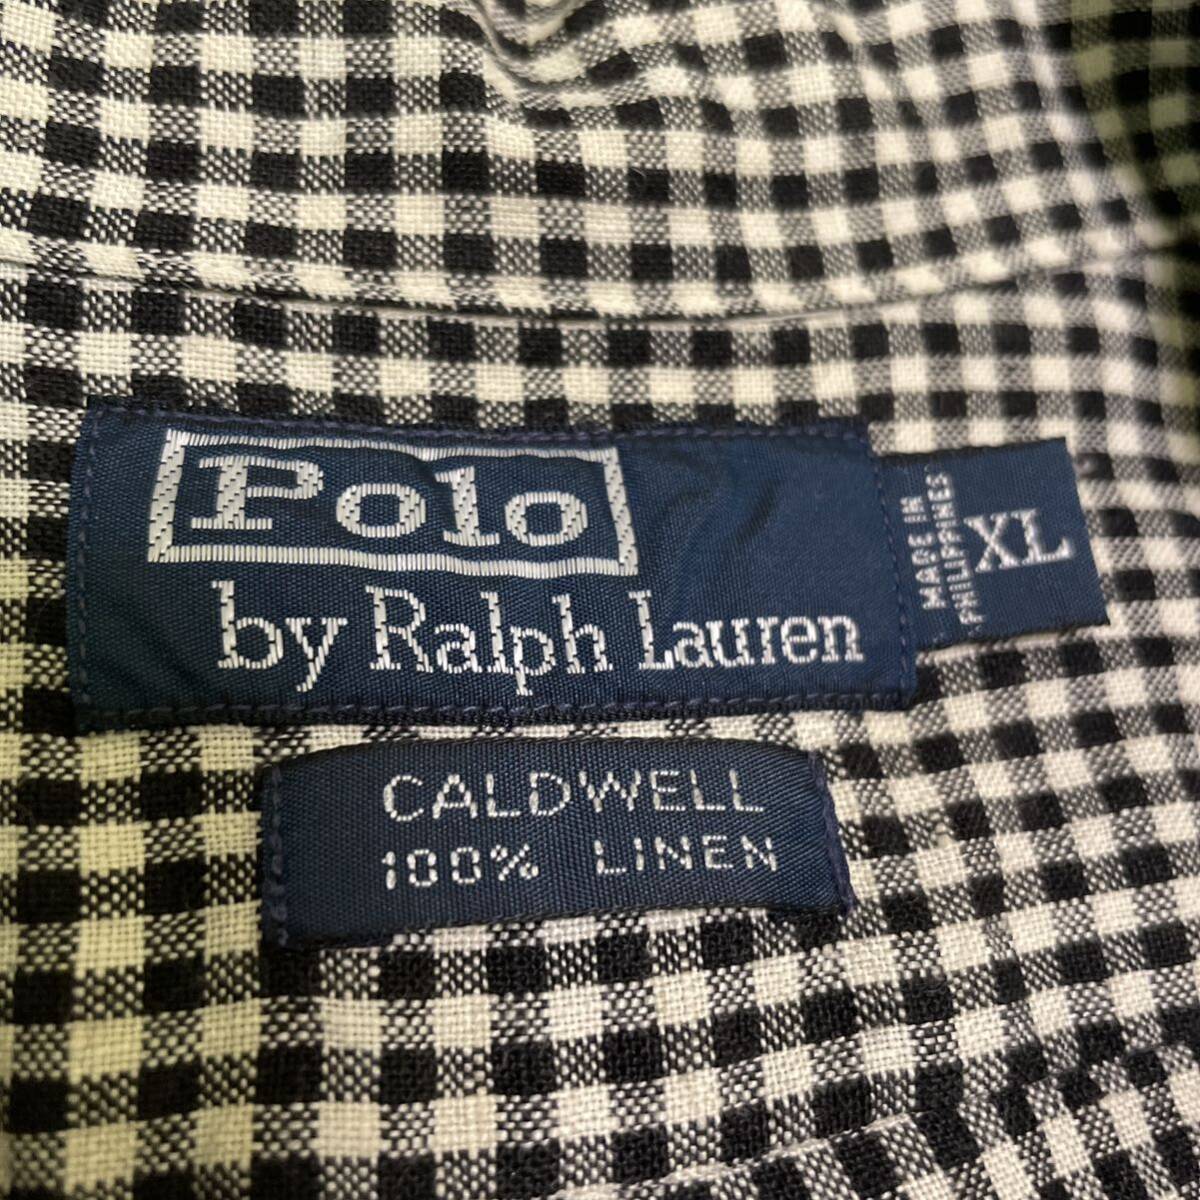  чёрный белый ralph lauren caldwelllinen открытый цвет рубашка рубашка с коротким рукавом . воротник Vintage 90s серебристый жевательная резинка проверка Ralph Lauren черный XL